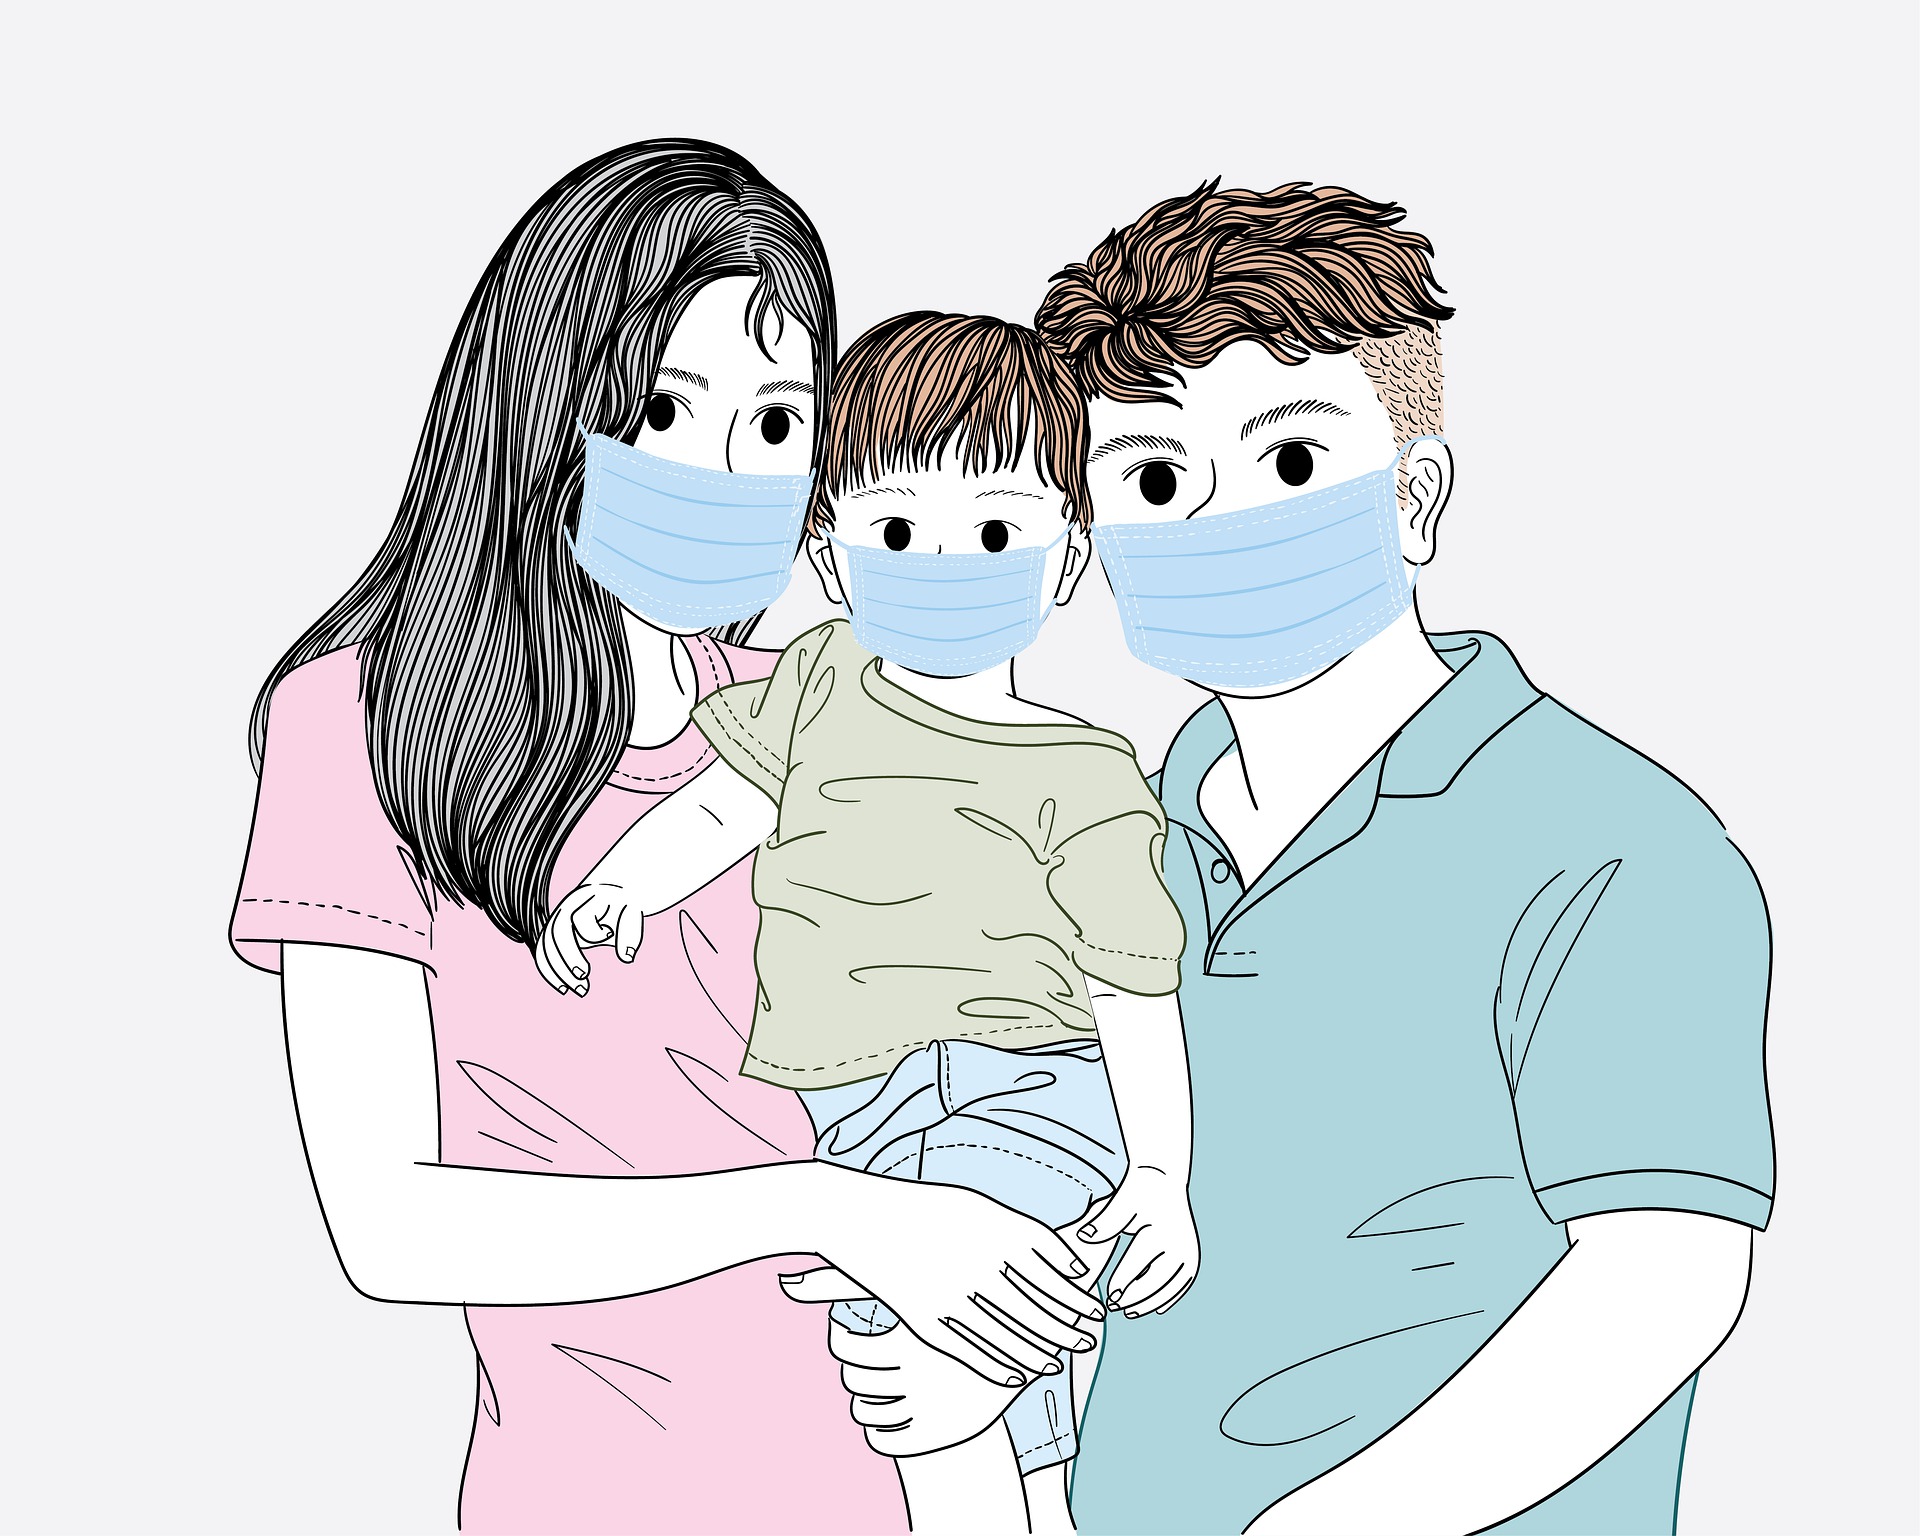 Rajzolt kép egy családról, akik maszkot viselnek